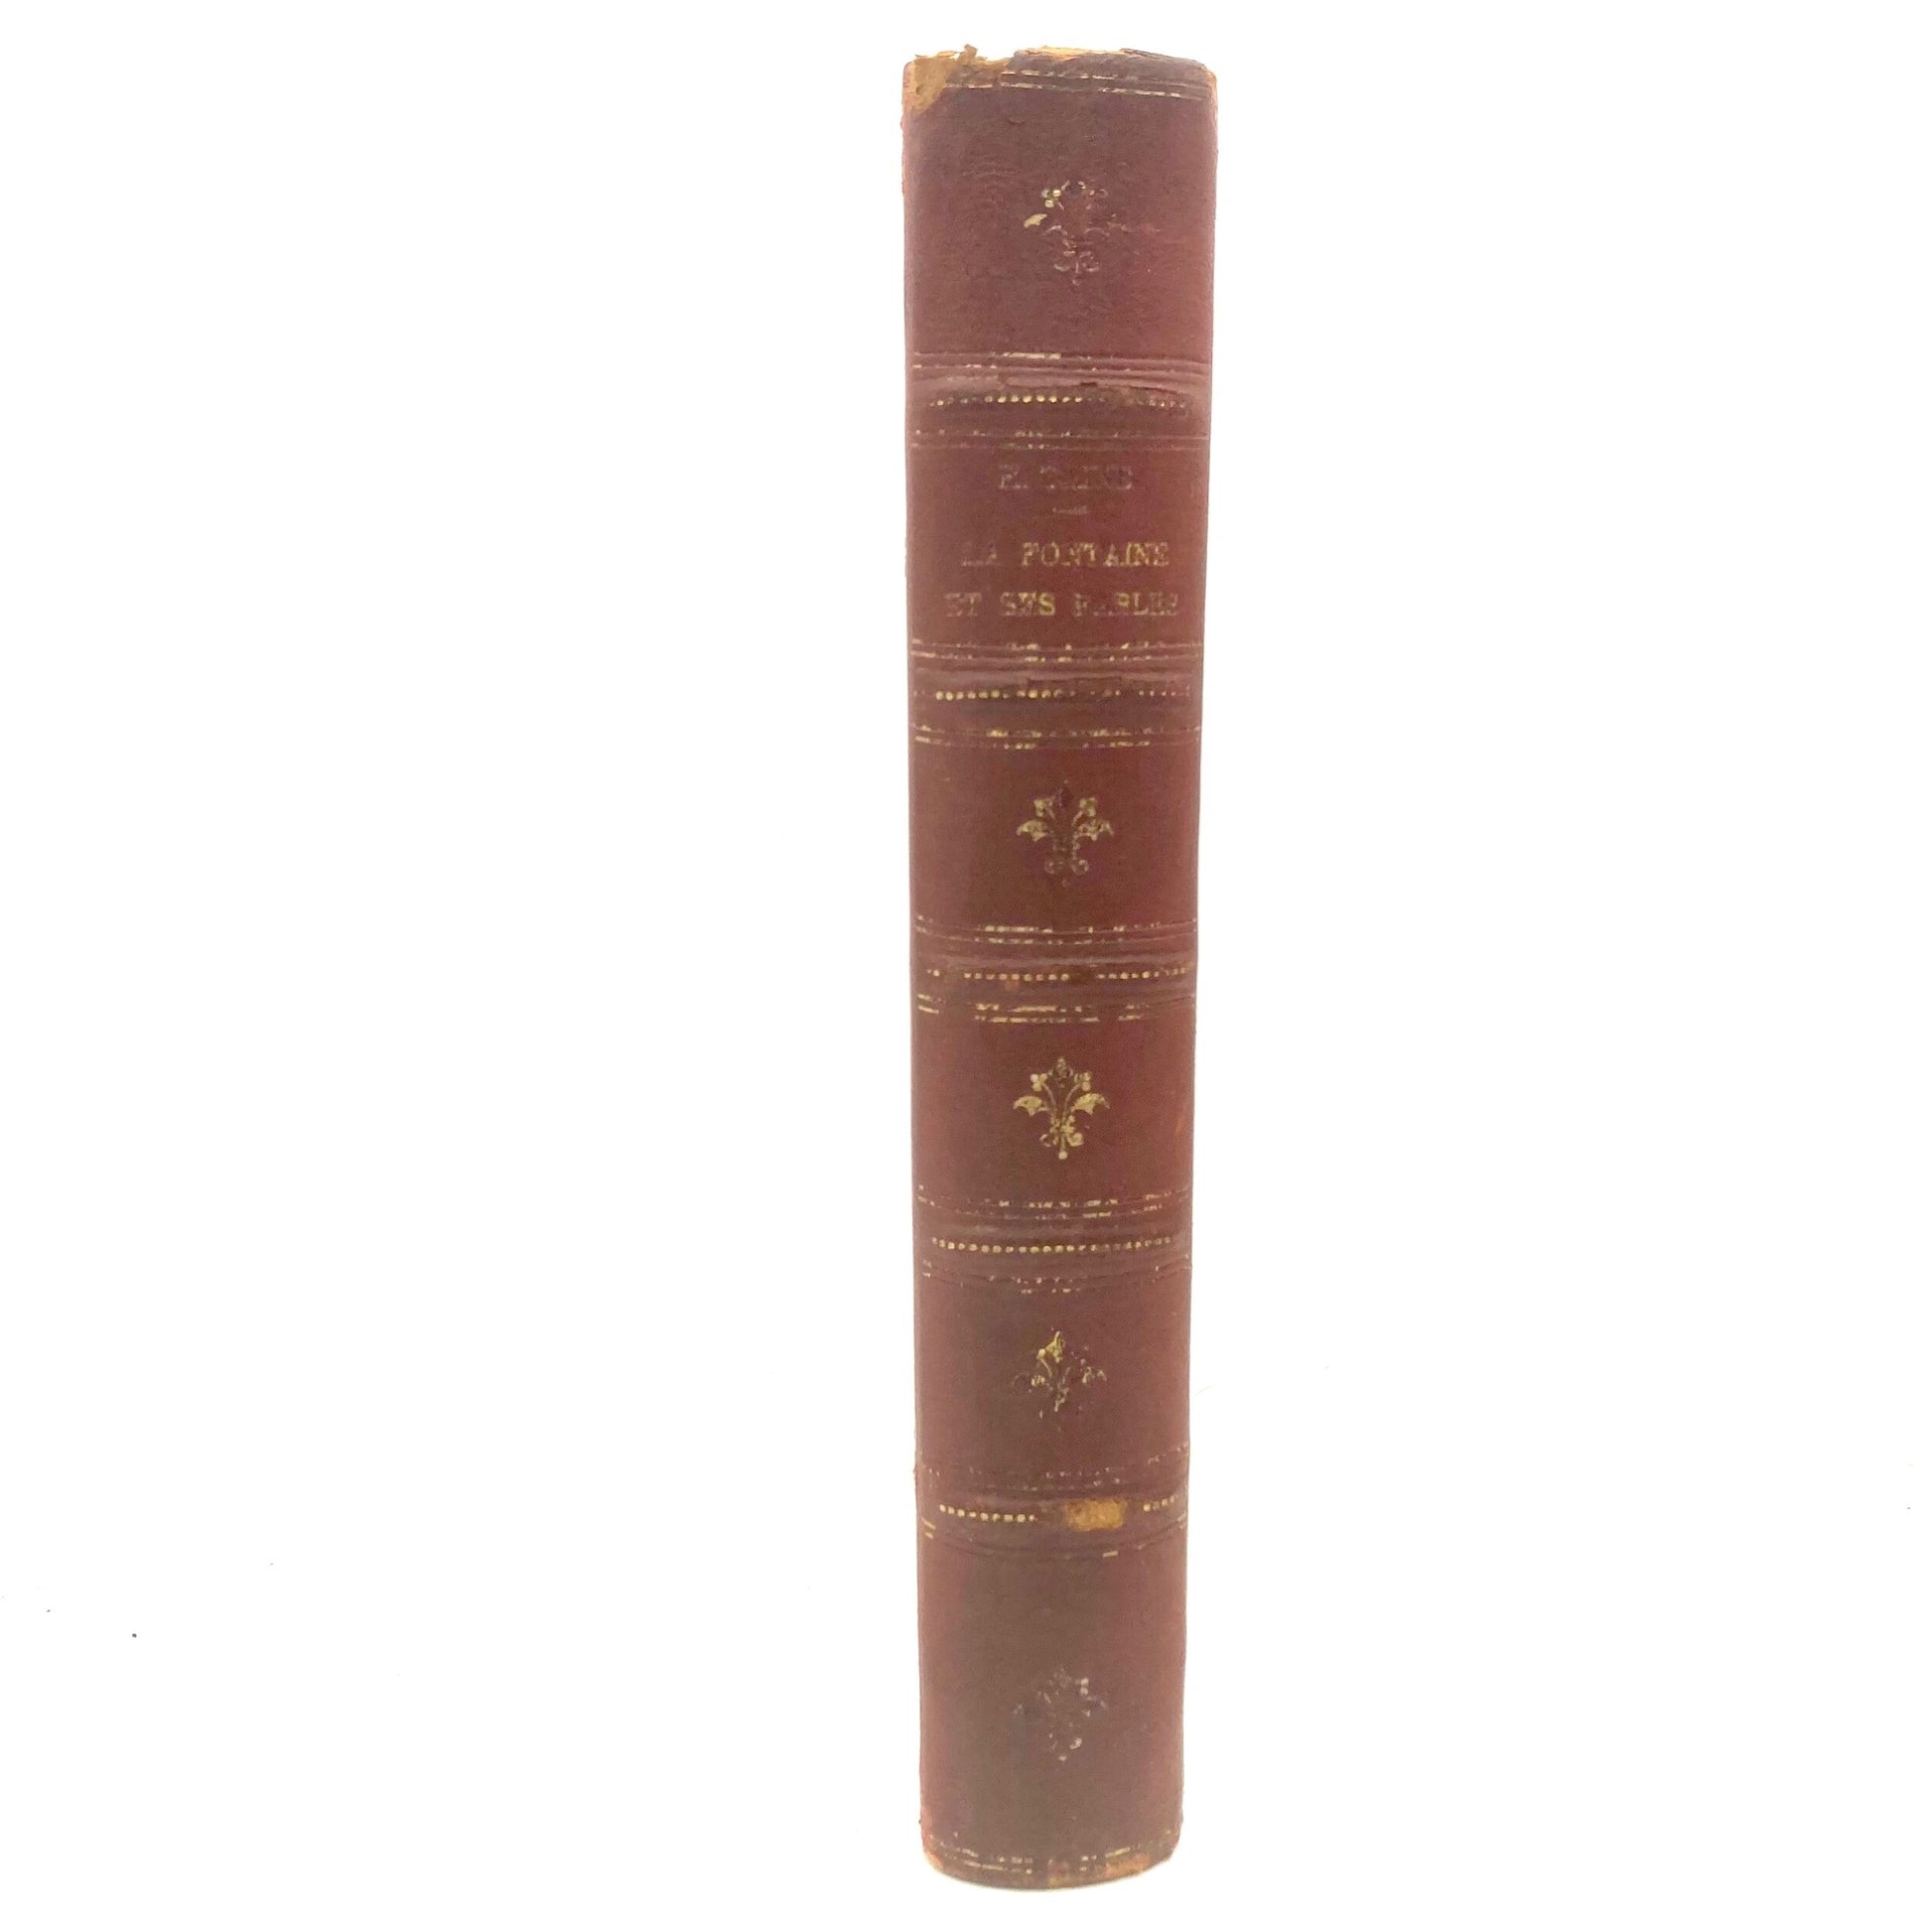 TAINE, H. "La Fontaine et Sa Fables" [Hachette, 1895] - Buzz Bookstore